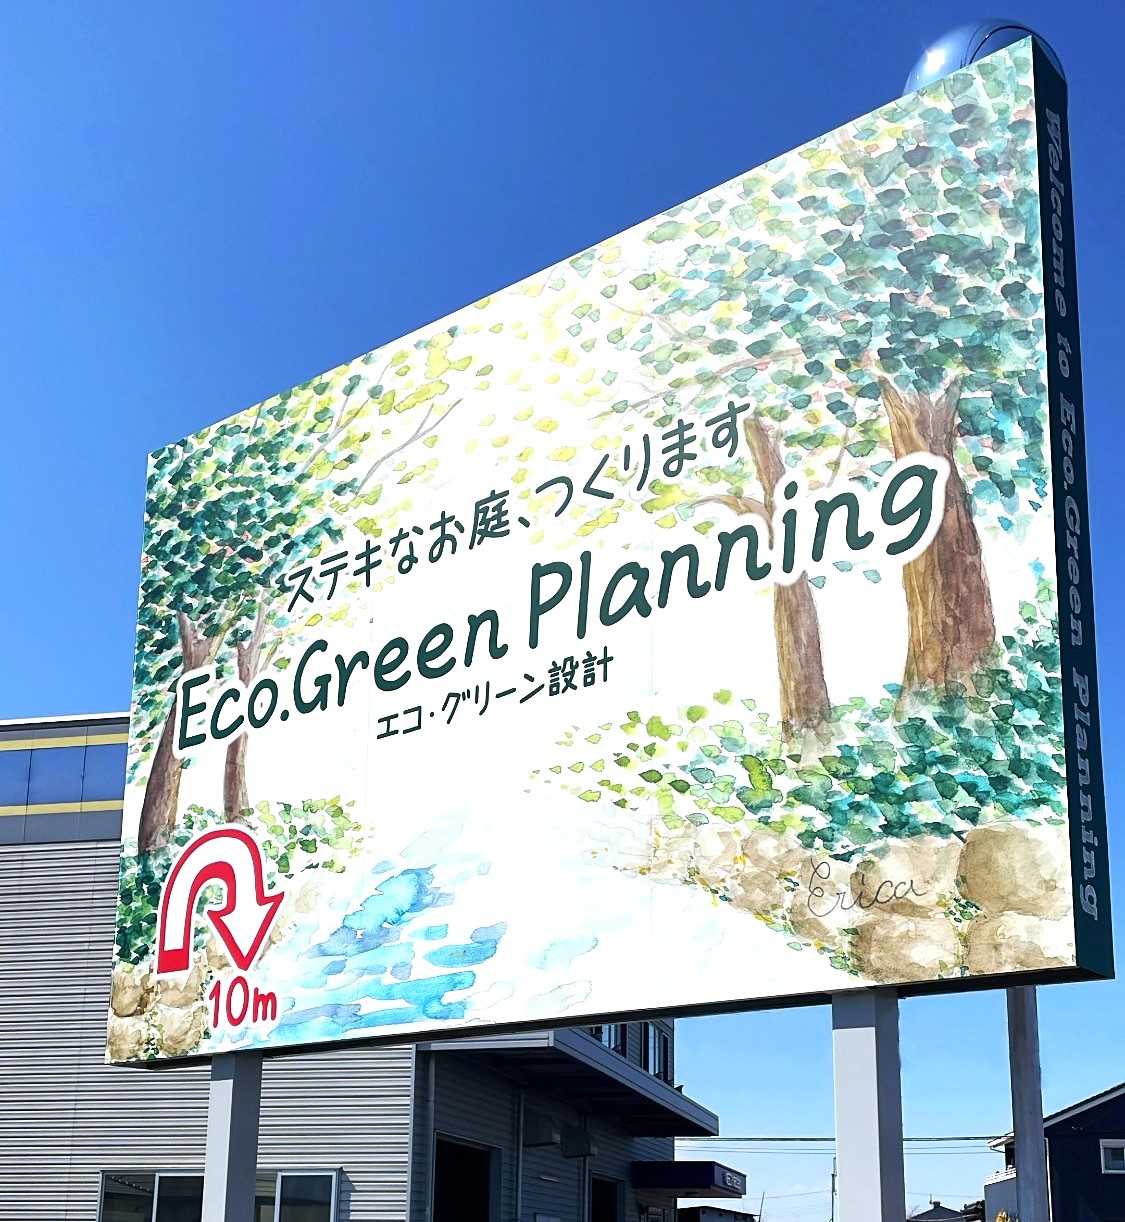 埼玉県熊谷市にあるエクステリア専門店、エコ・グリーン設計の第2駐車場の新看板